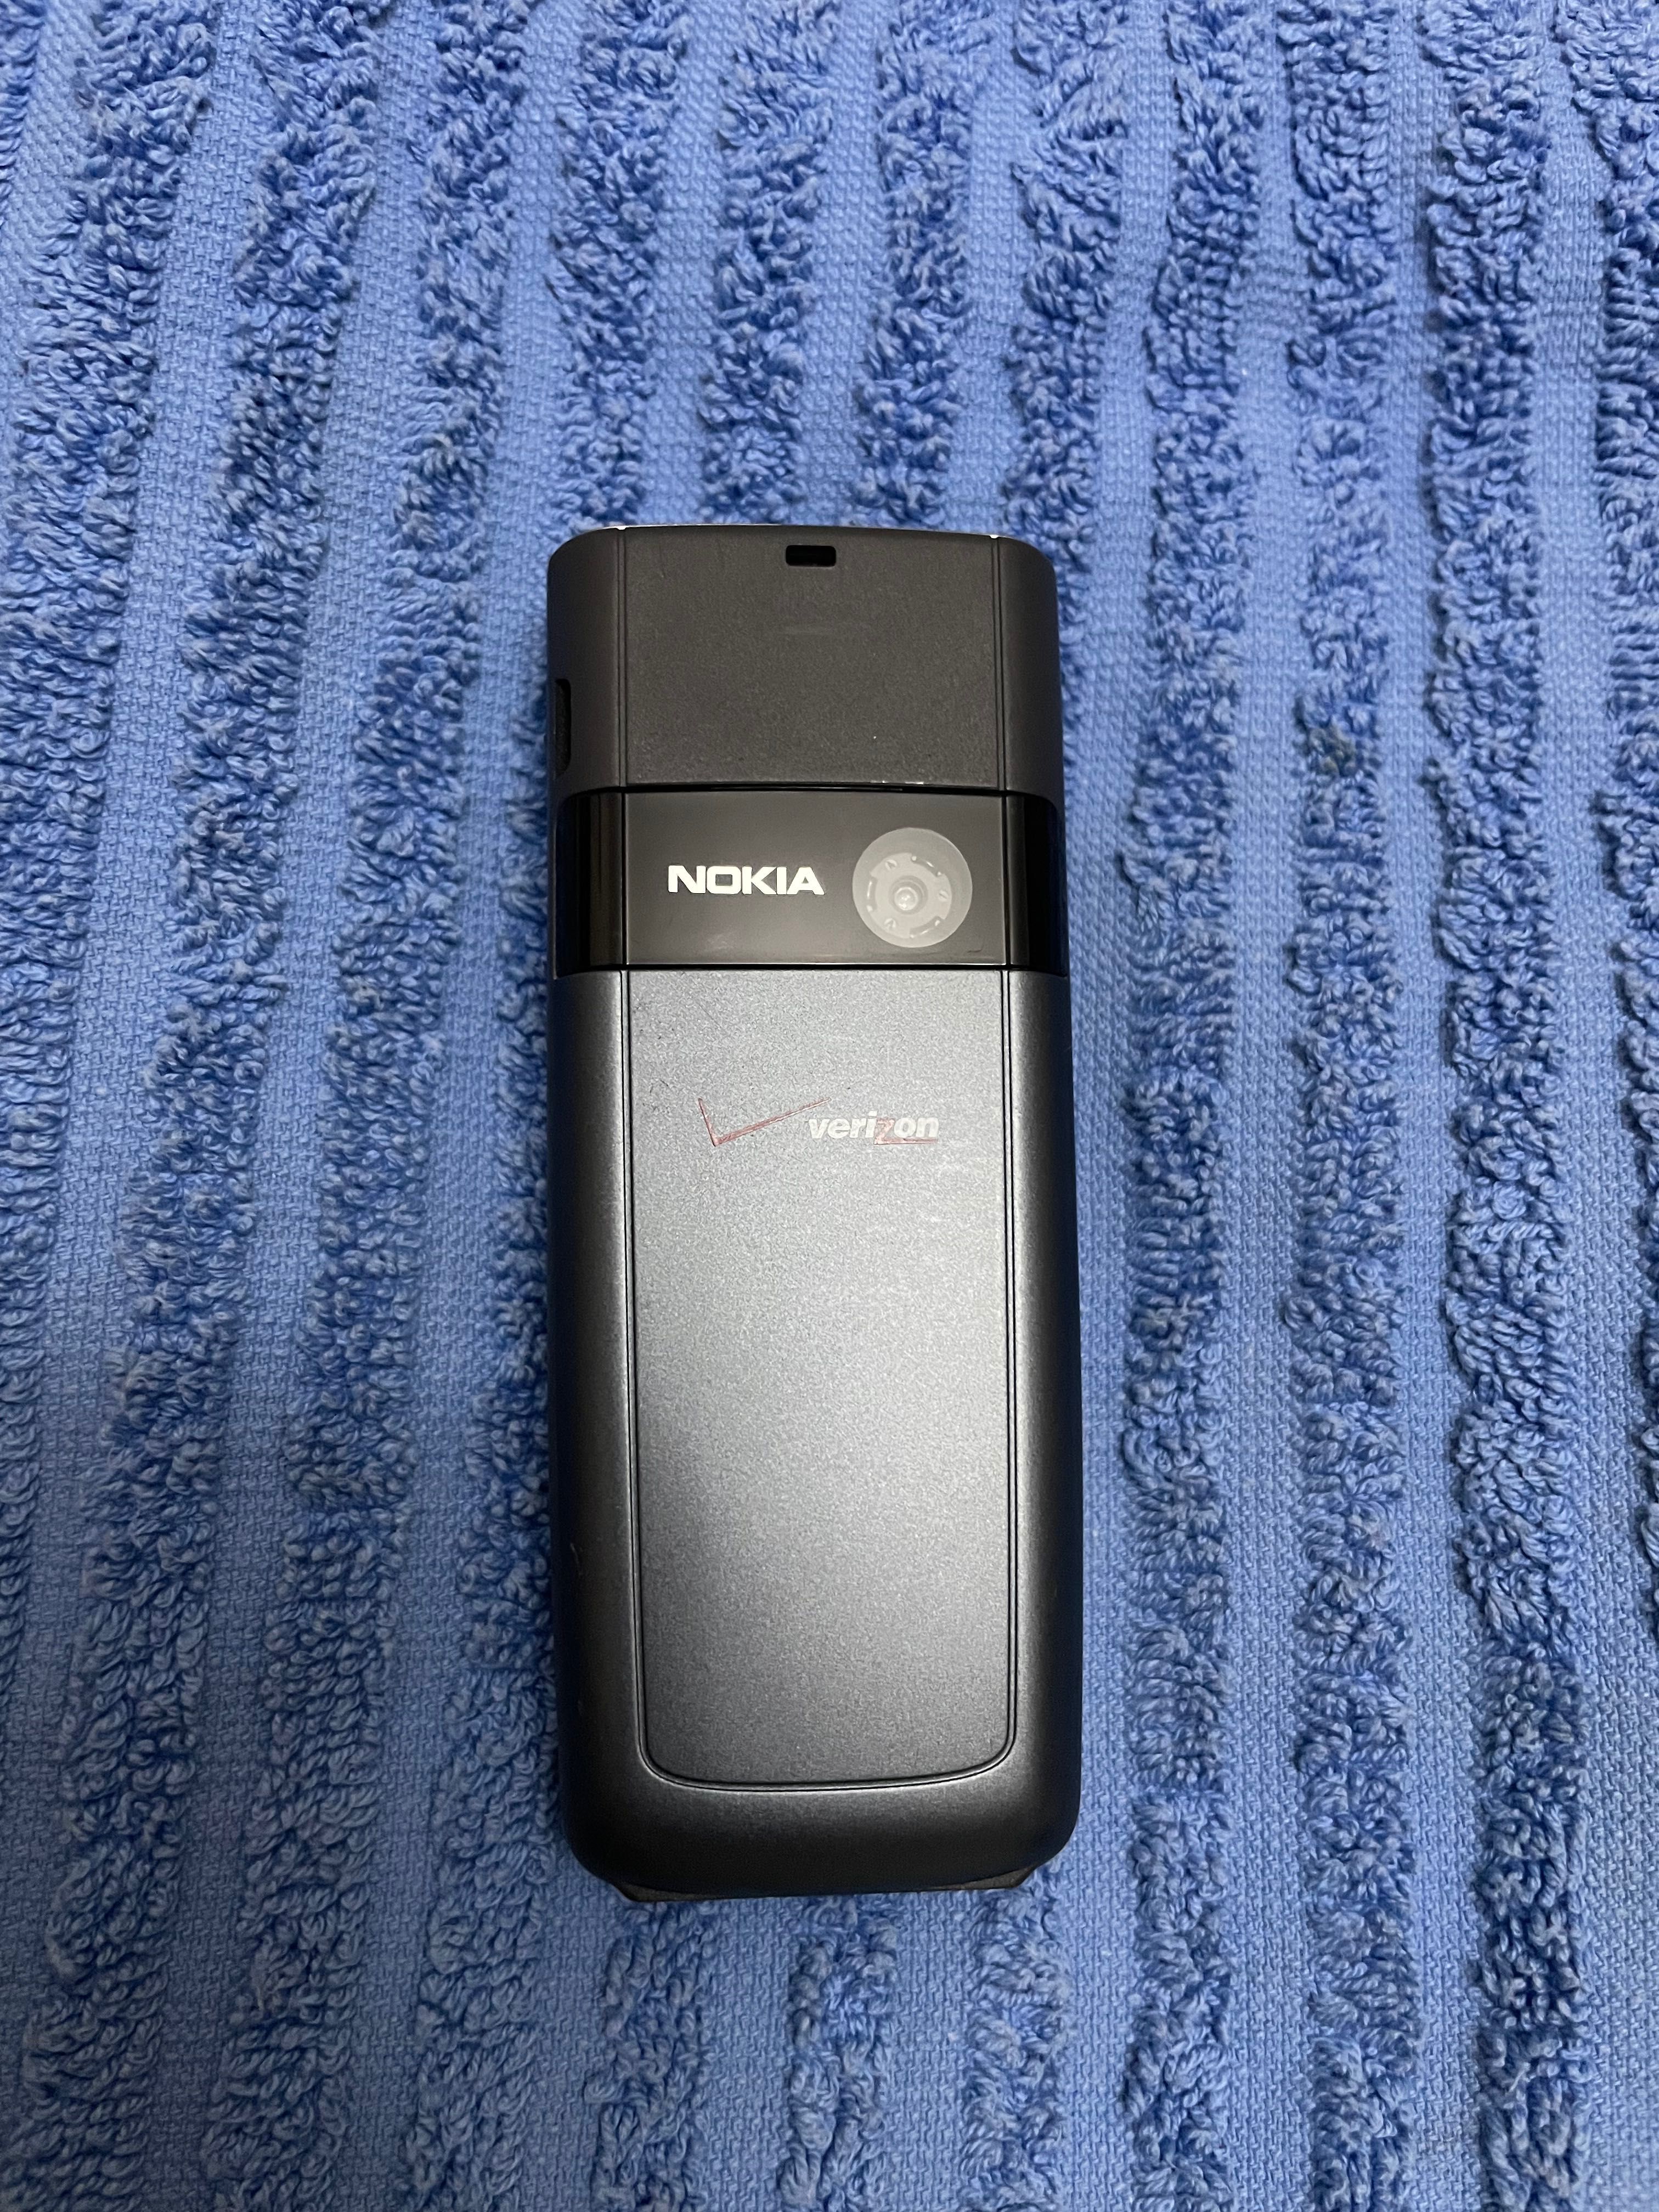 Продаётся идеал Nokia 6235i Verizon original